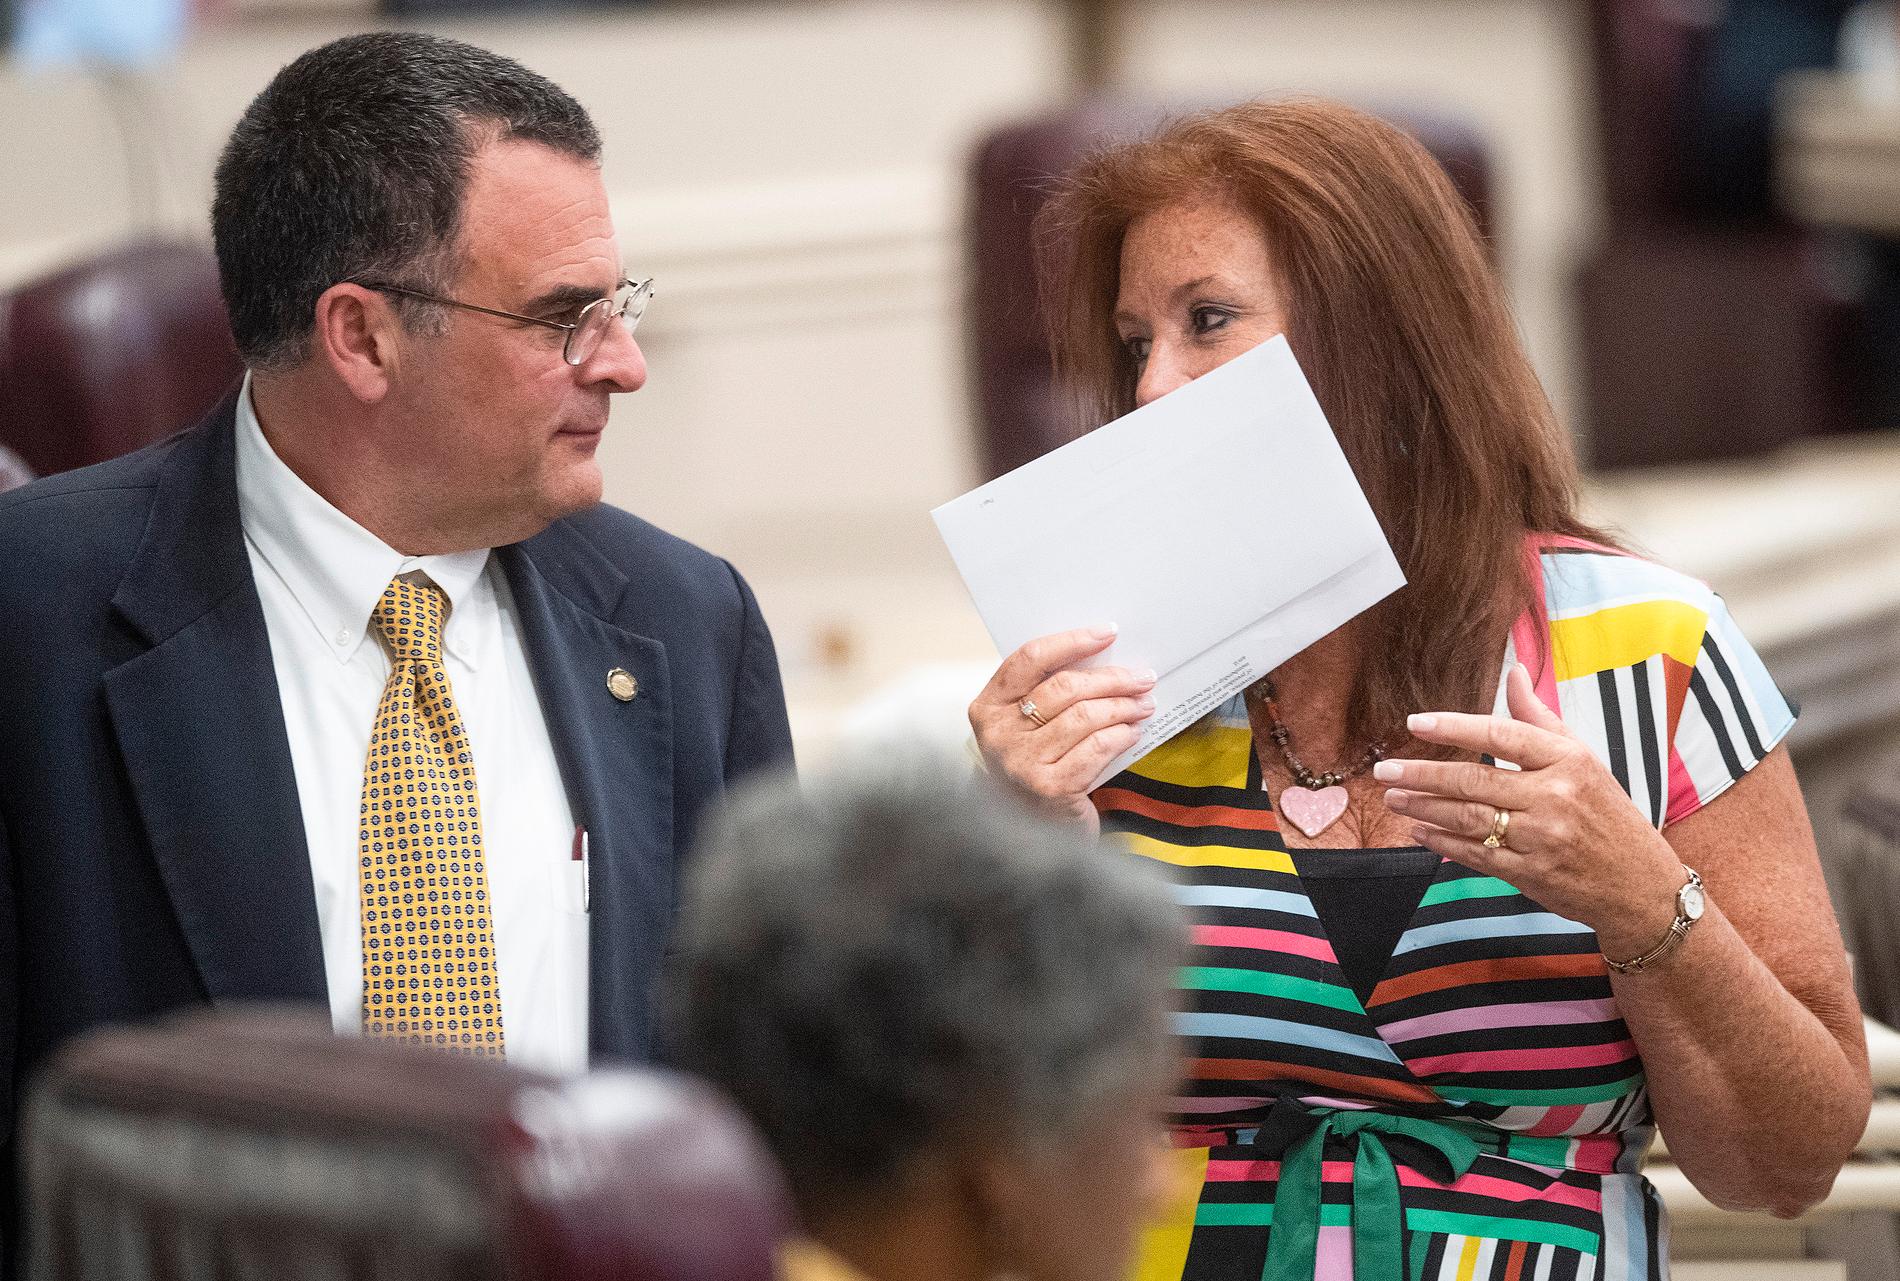 Delstatskongressledamöterna Chris Pringle och Terri Collins i Alabama delstatskongress i Montgomery i samband med veckans överläggningar om abortlagstiftning.